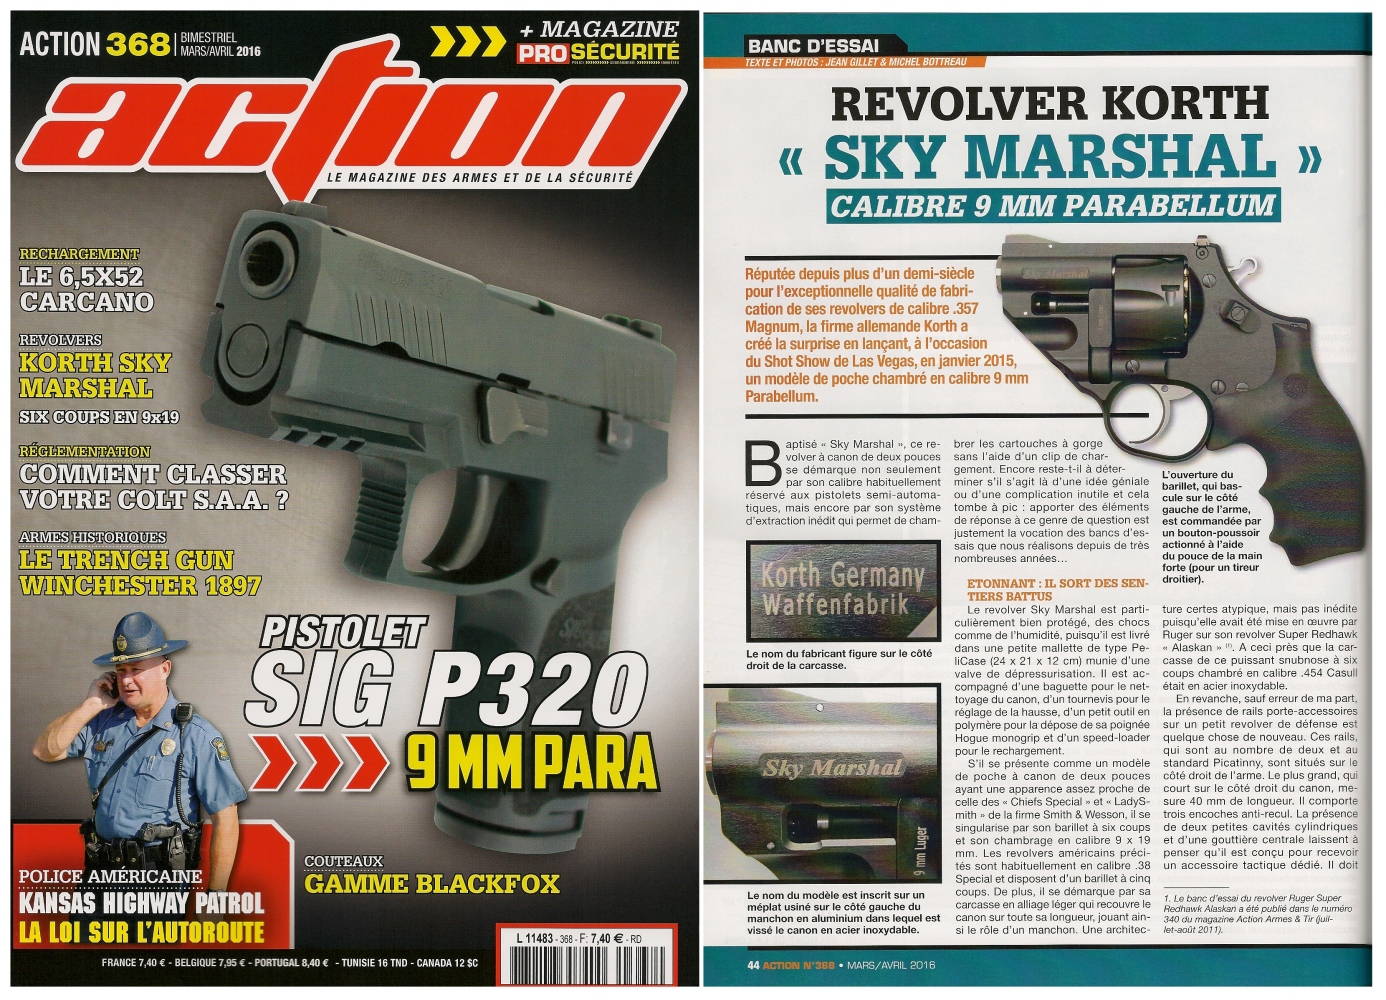 Le banc d'essai du revolver Korth « Sky Marshal » a été publié sur 6 pages dans le magazine Action n°368 (mars/avril 2016) 